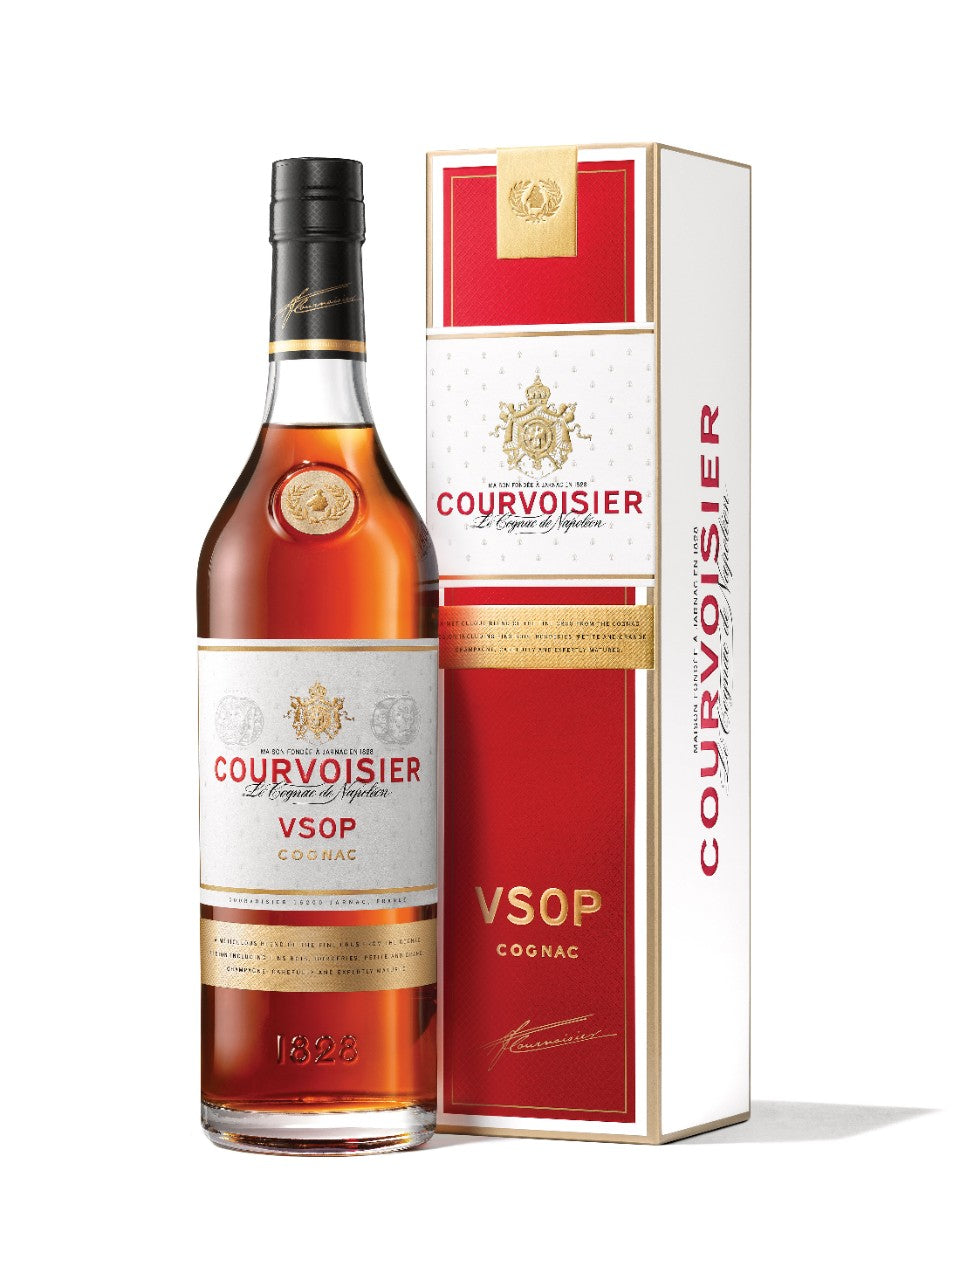 Courvoisier VSOP Cognac 750 ml bottle